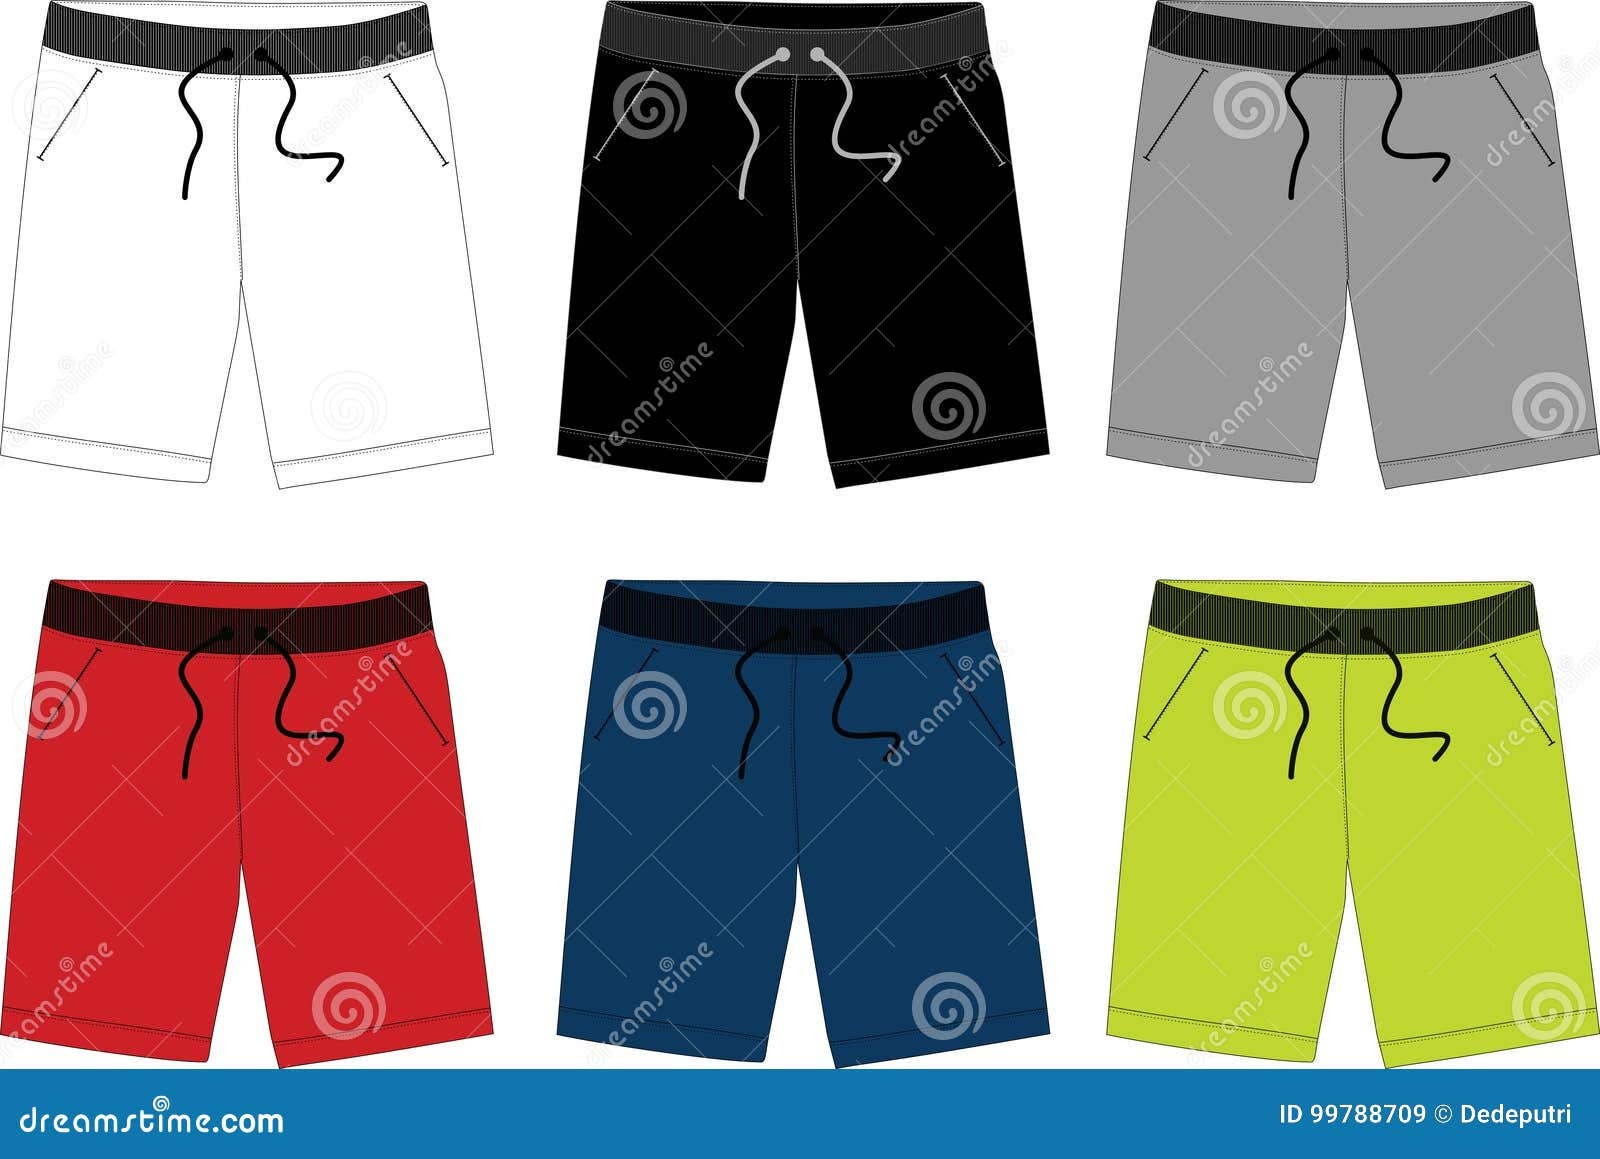 Vector Short Pants for Men 003 Stock Vector - Illustration of brand ...